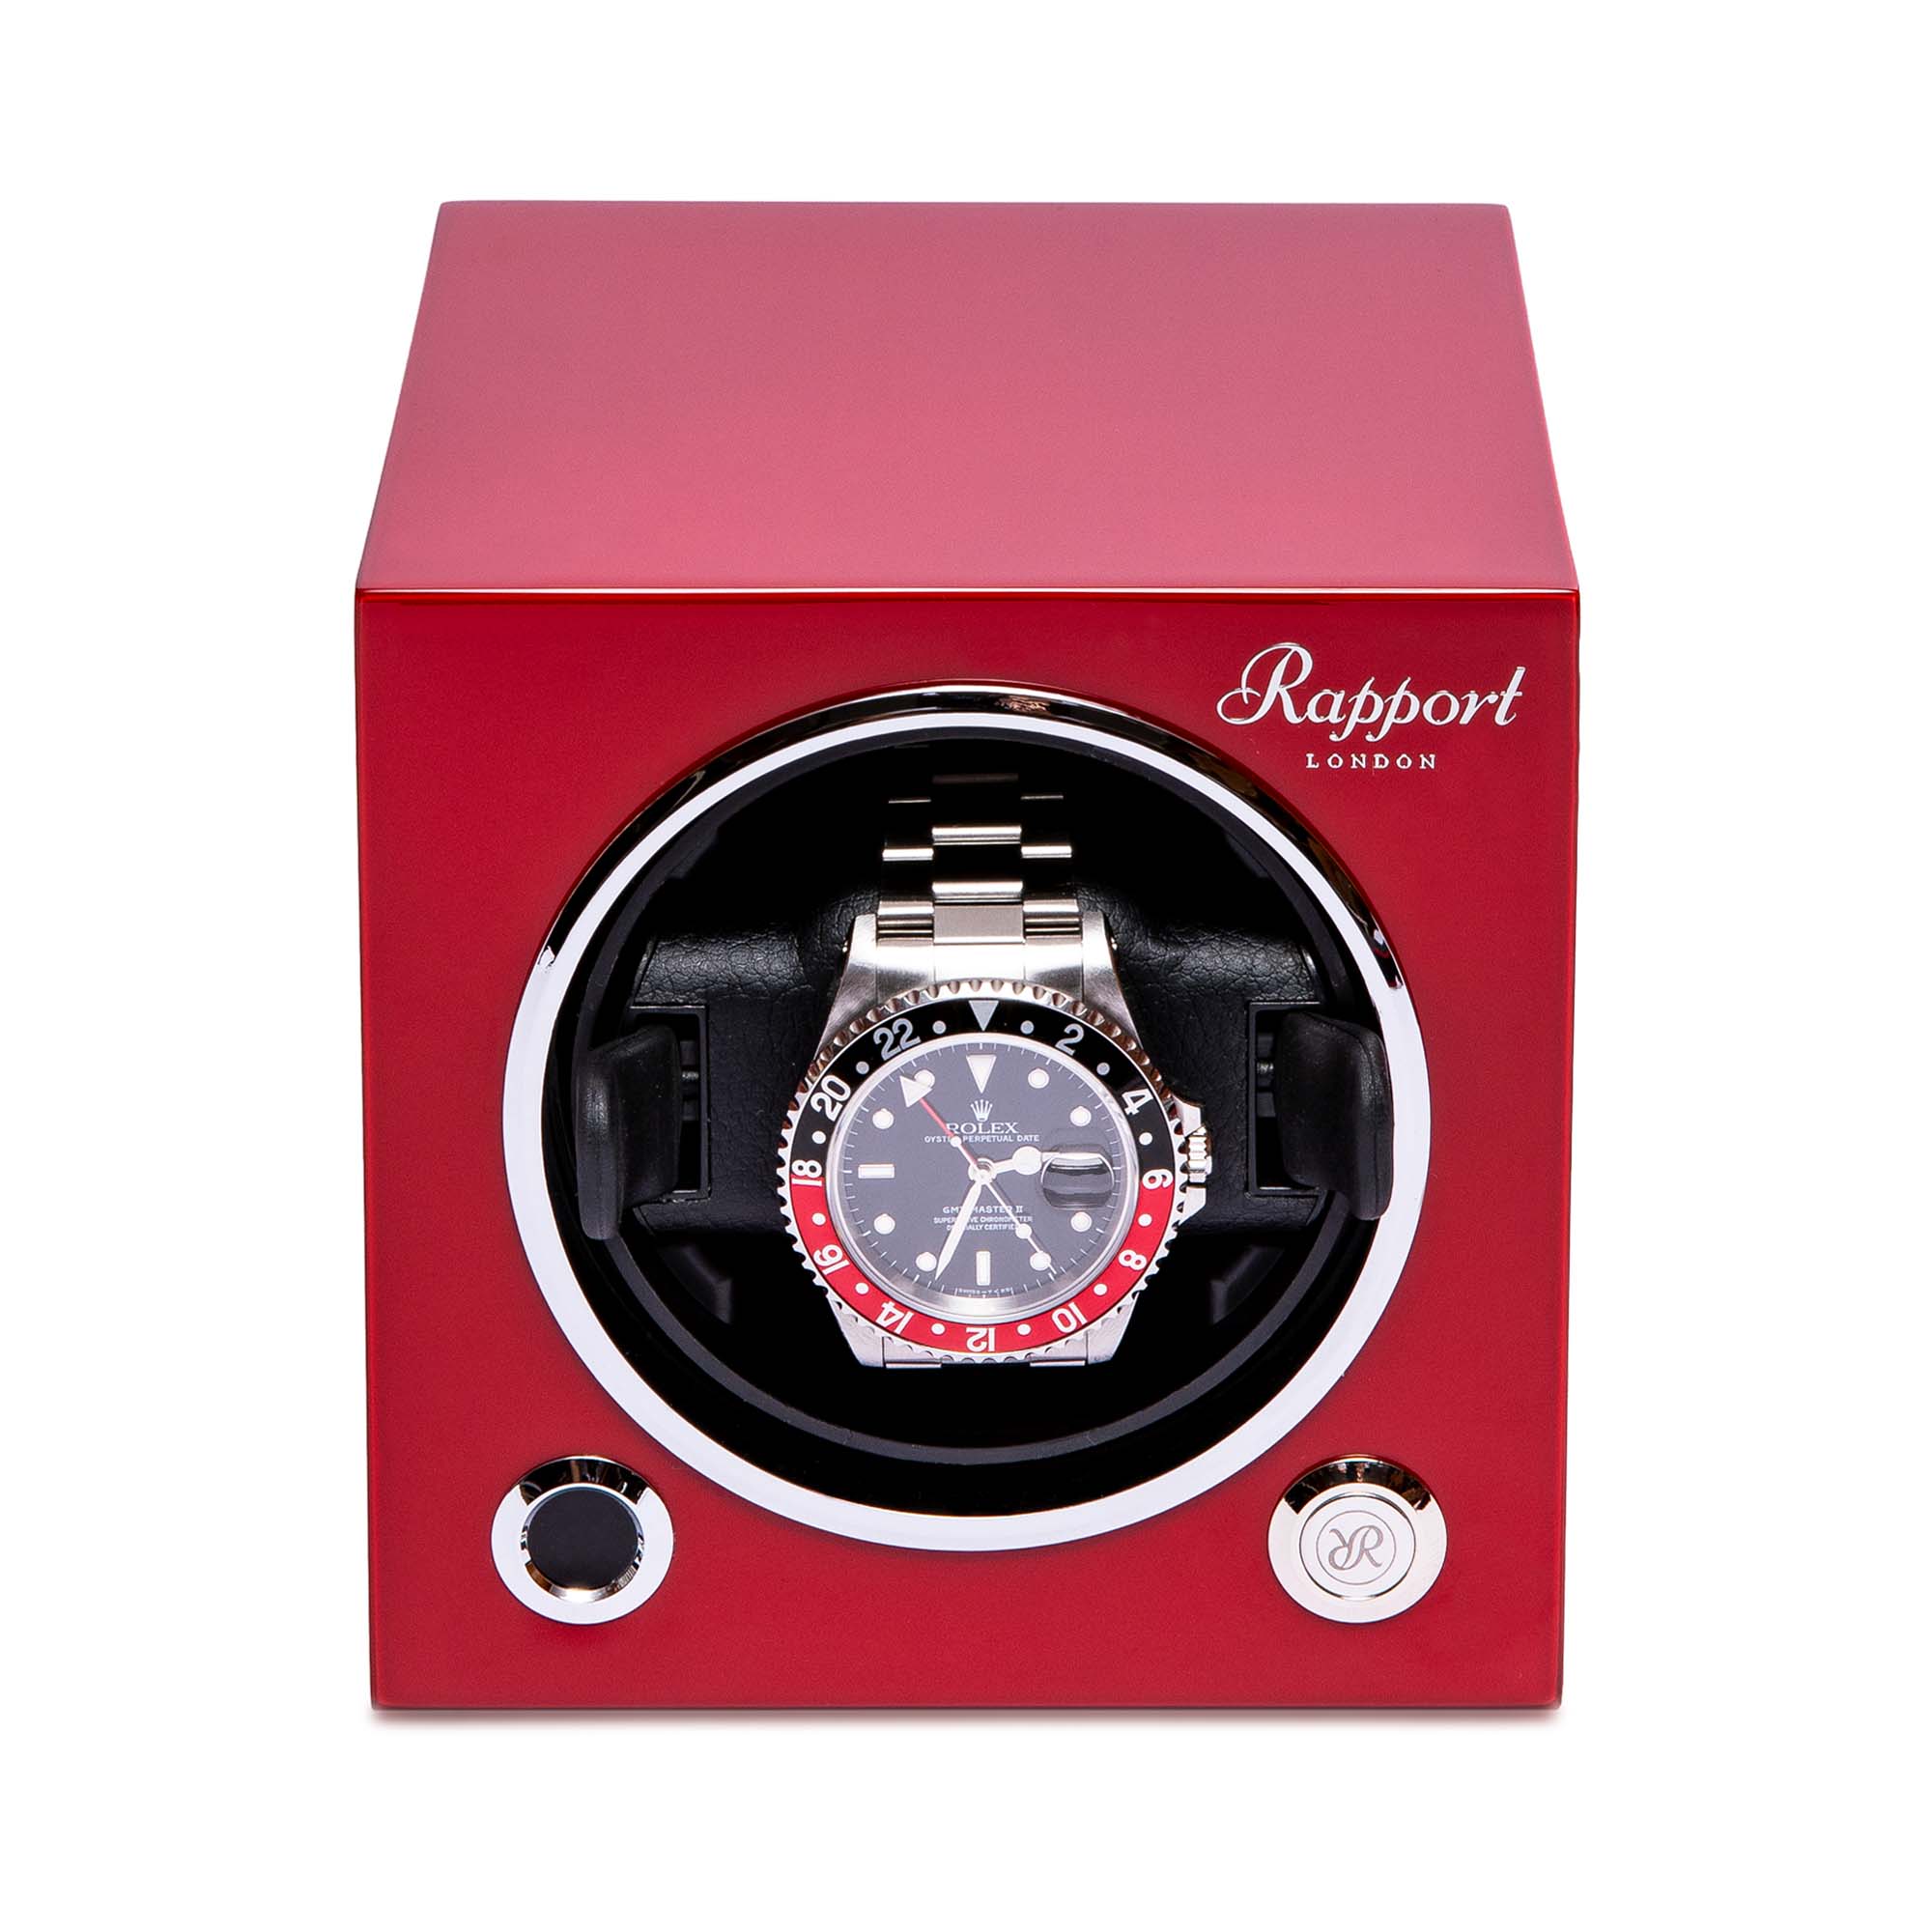 Rapport London Evo Single Watch Winder | Luxury Automatic Watch Winder